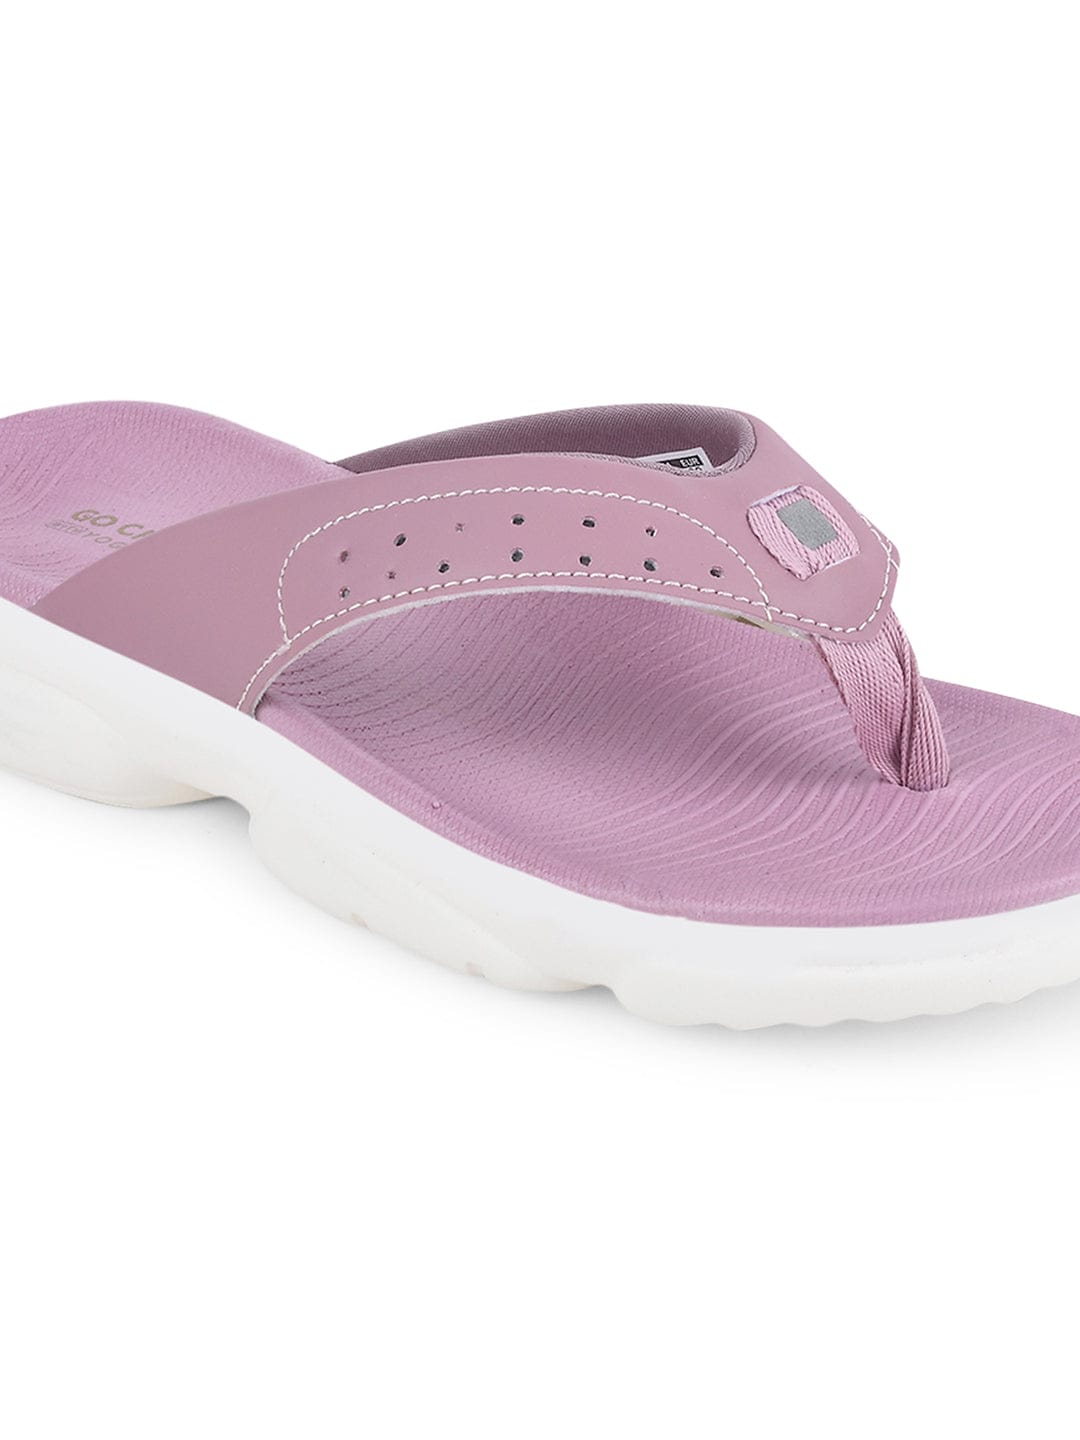 Buy Flip-Flop For Women: Sl-409L-L-Pink-Mauve | Campus Shoes